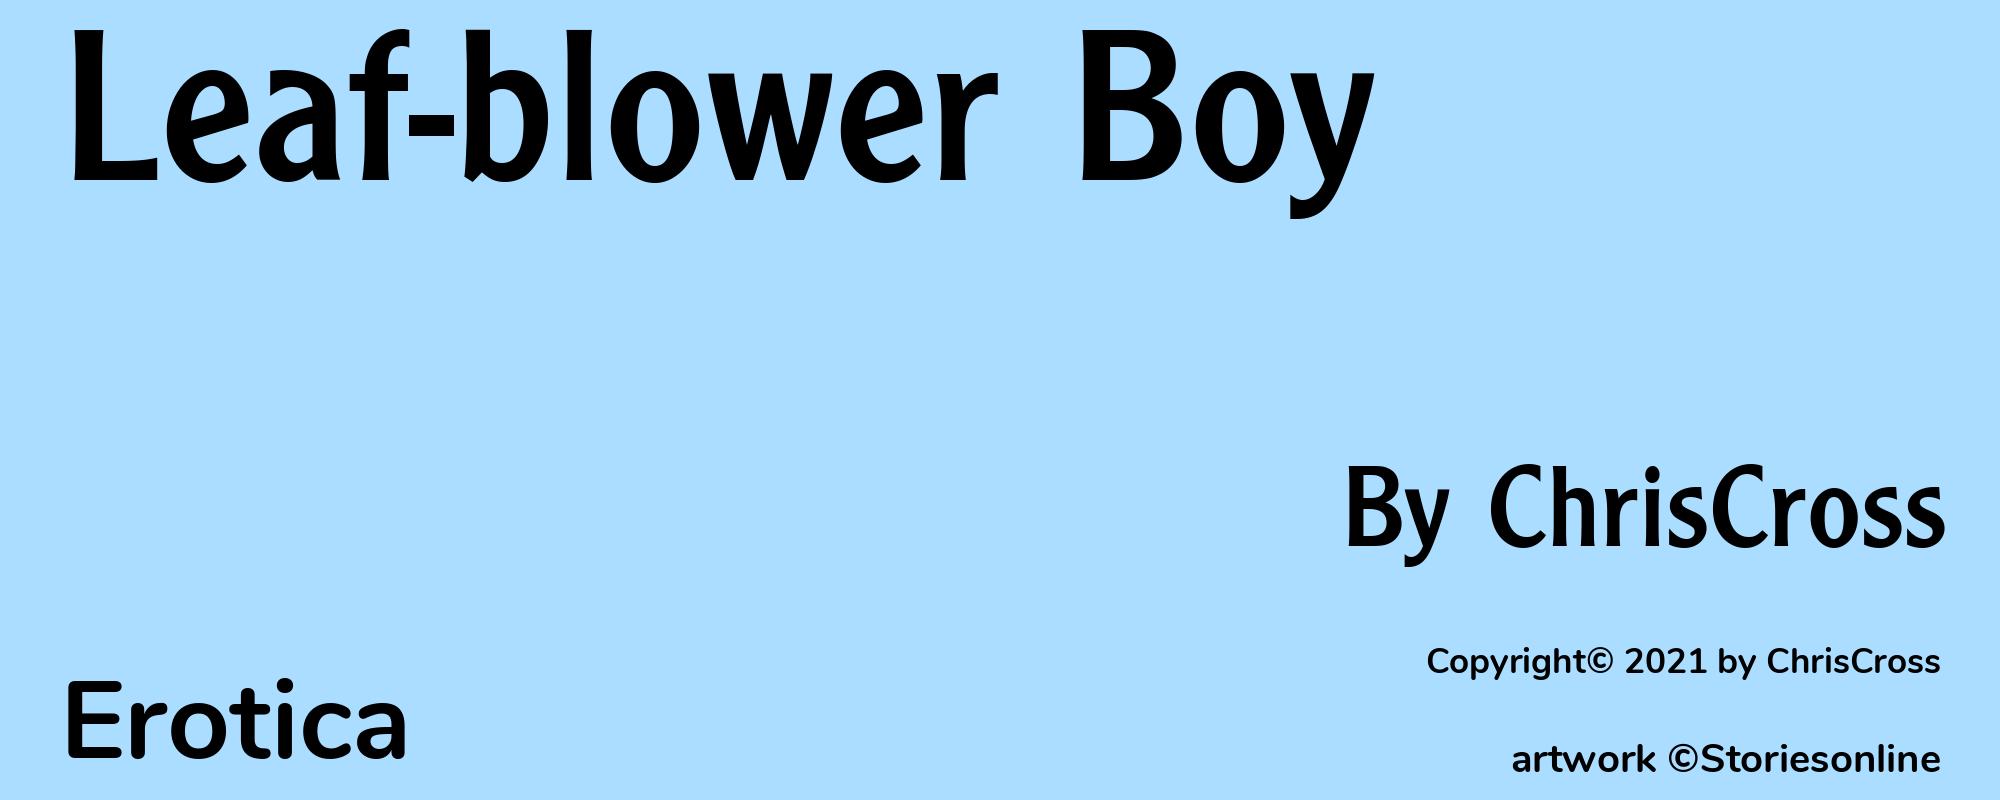 Leaf-blower Boy - Cover